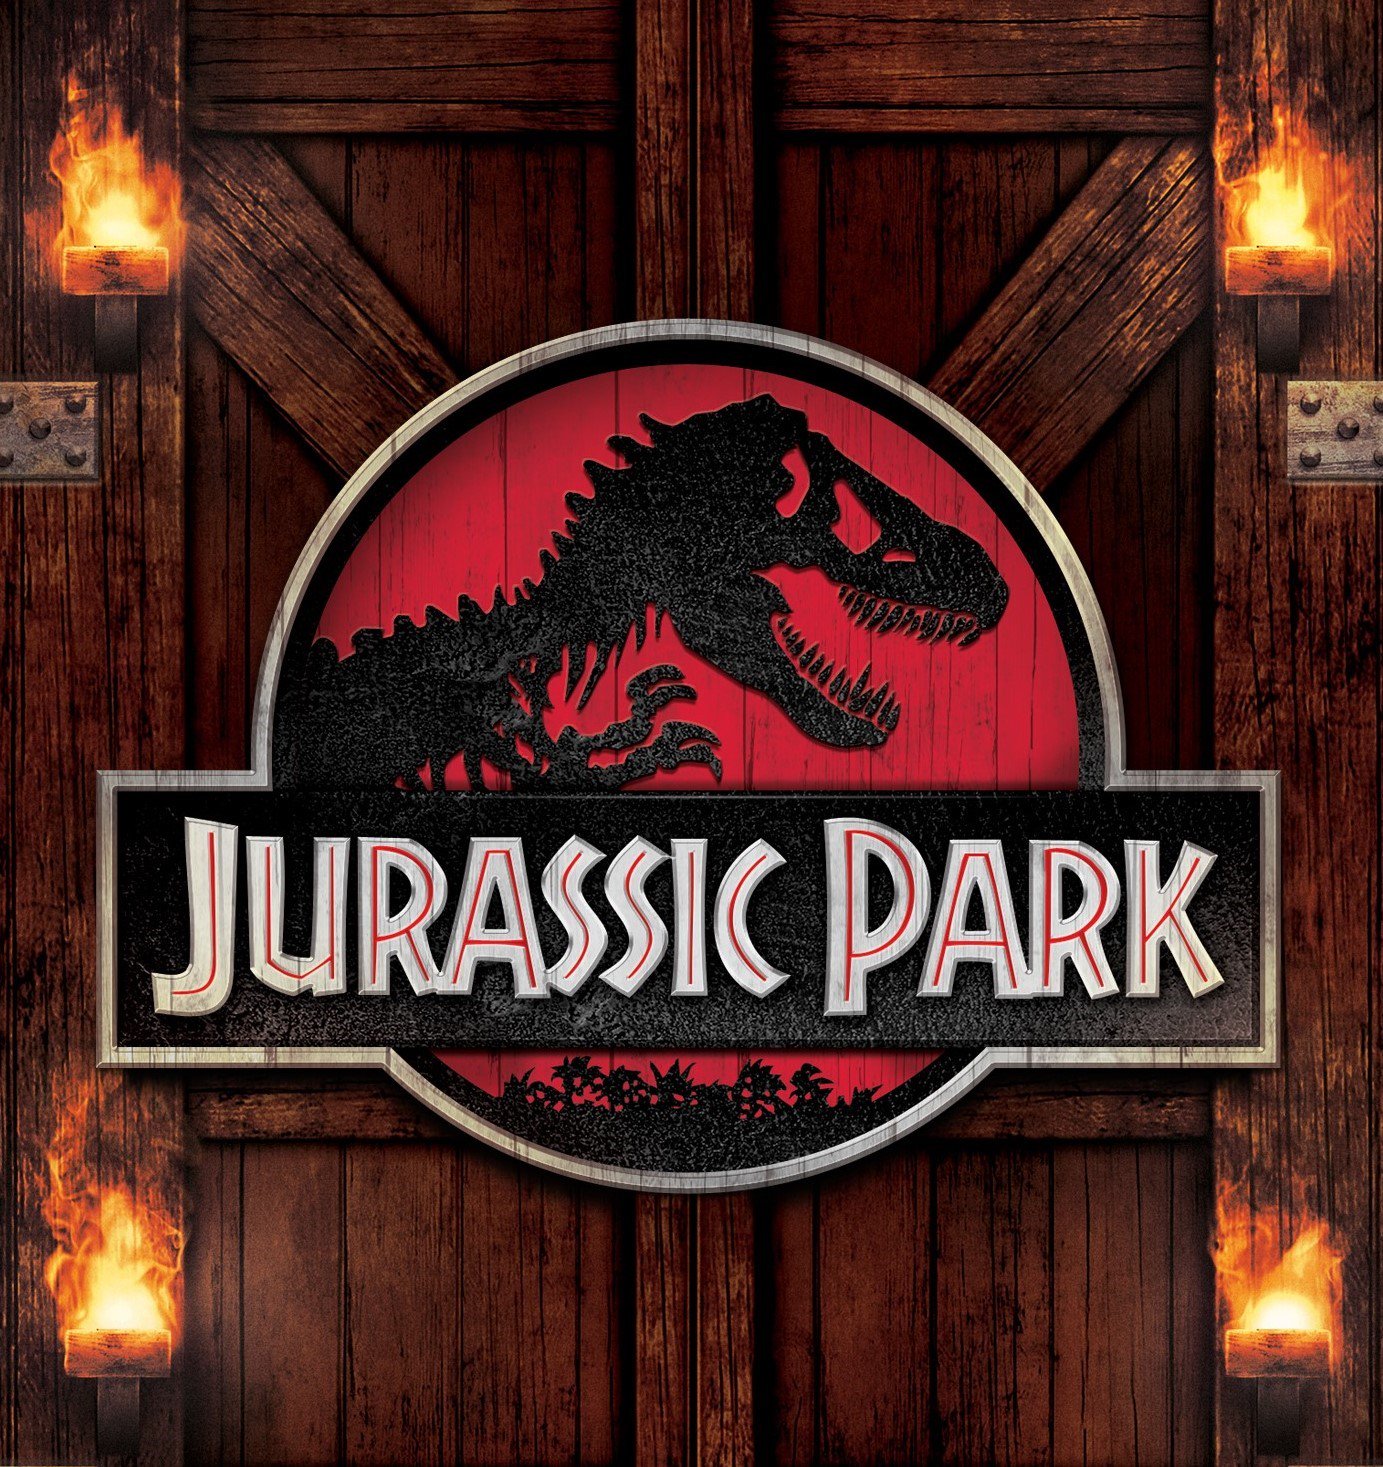 The 1993 film Jurassic Park's Logo